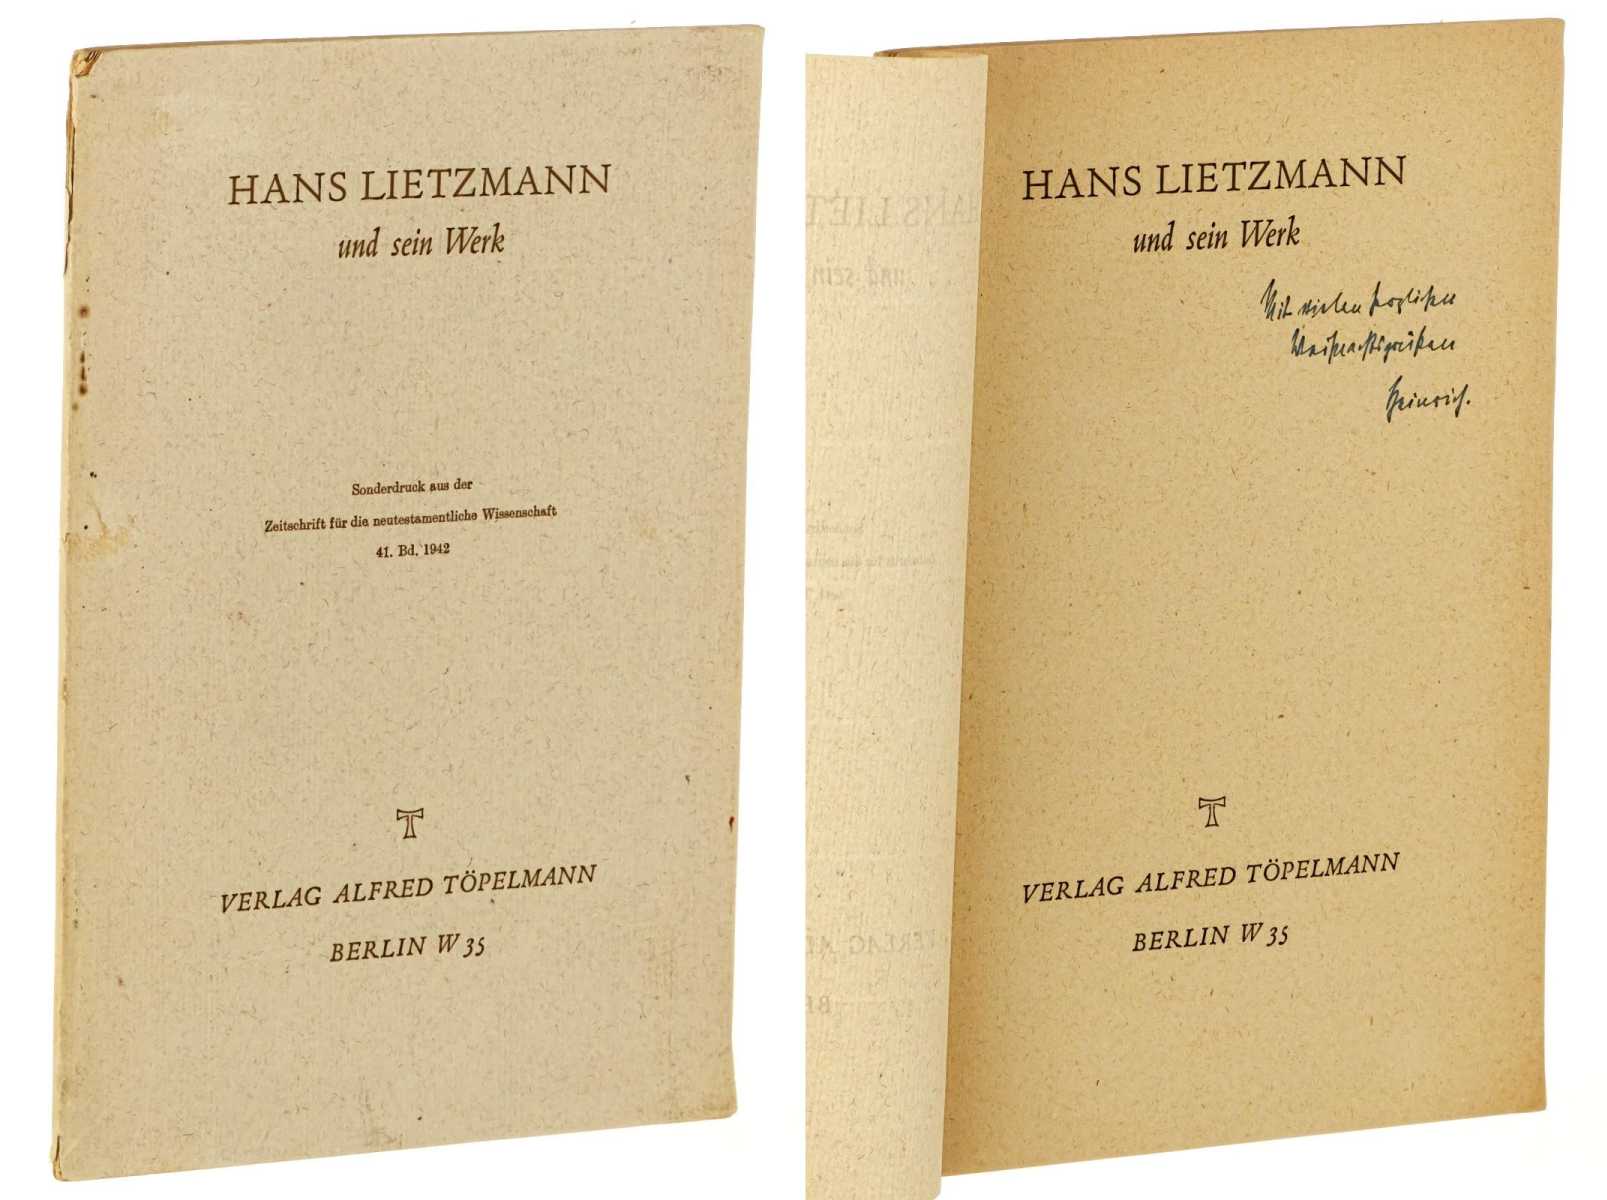 Bornkamm, Heinrich:  Hans Lietzmann und sein Werk. Hans Lietzmann ; Rede bei der akad. Trauerfeier in der alten Aula der Univ. Berlin am 15. Juli 1942. 